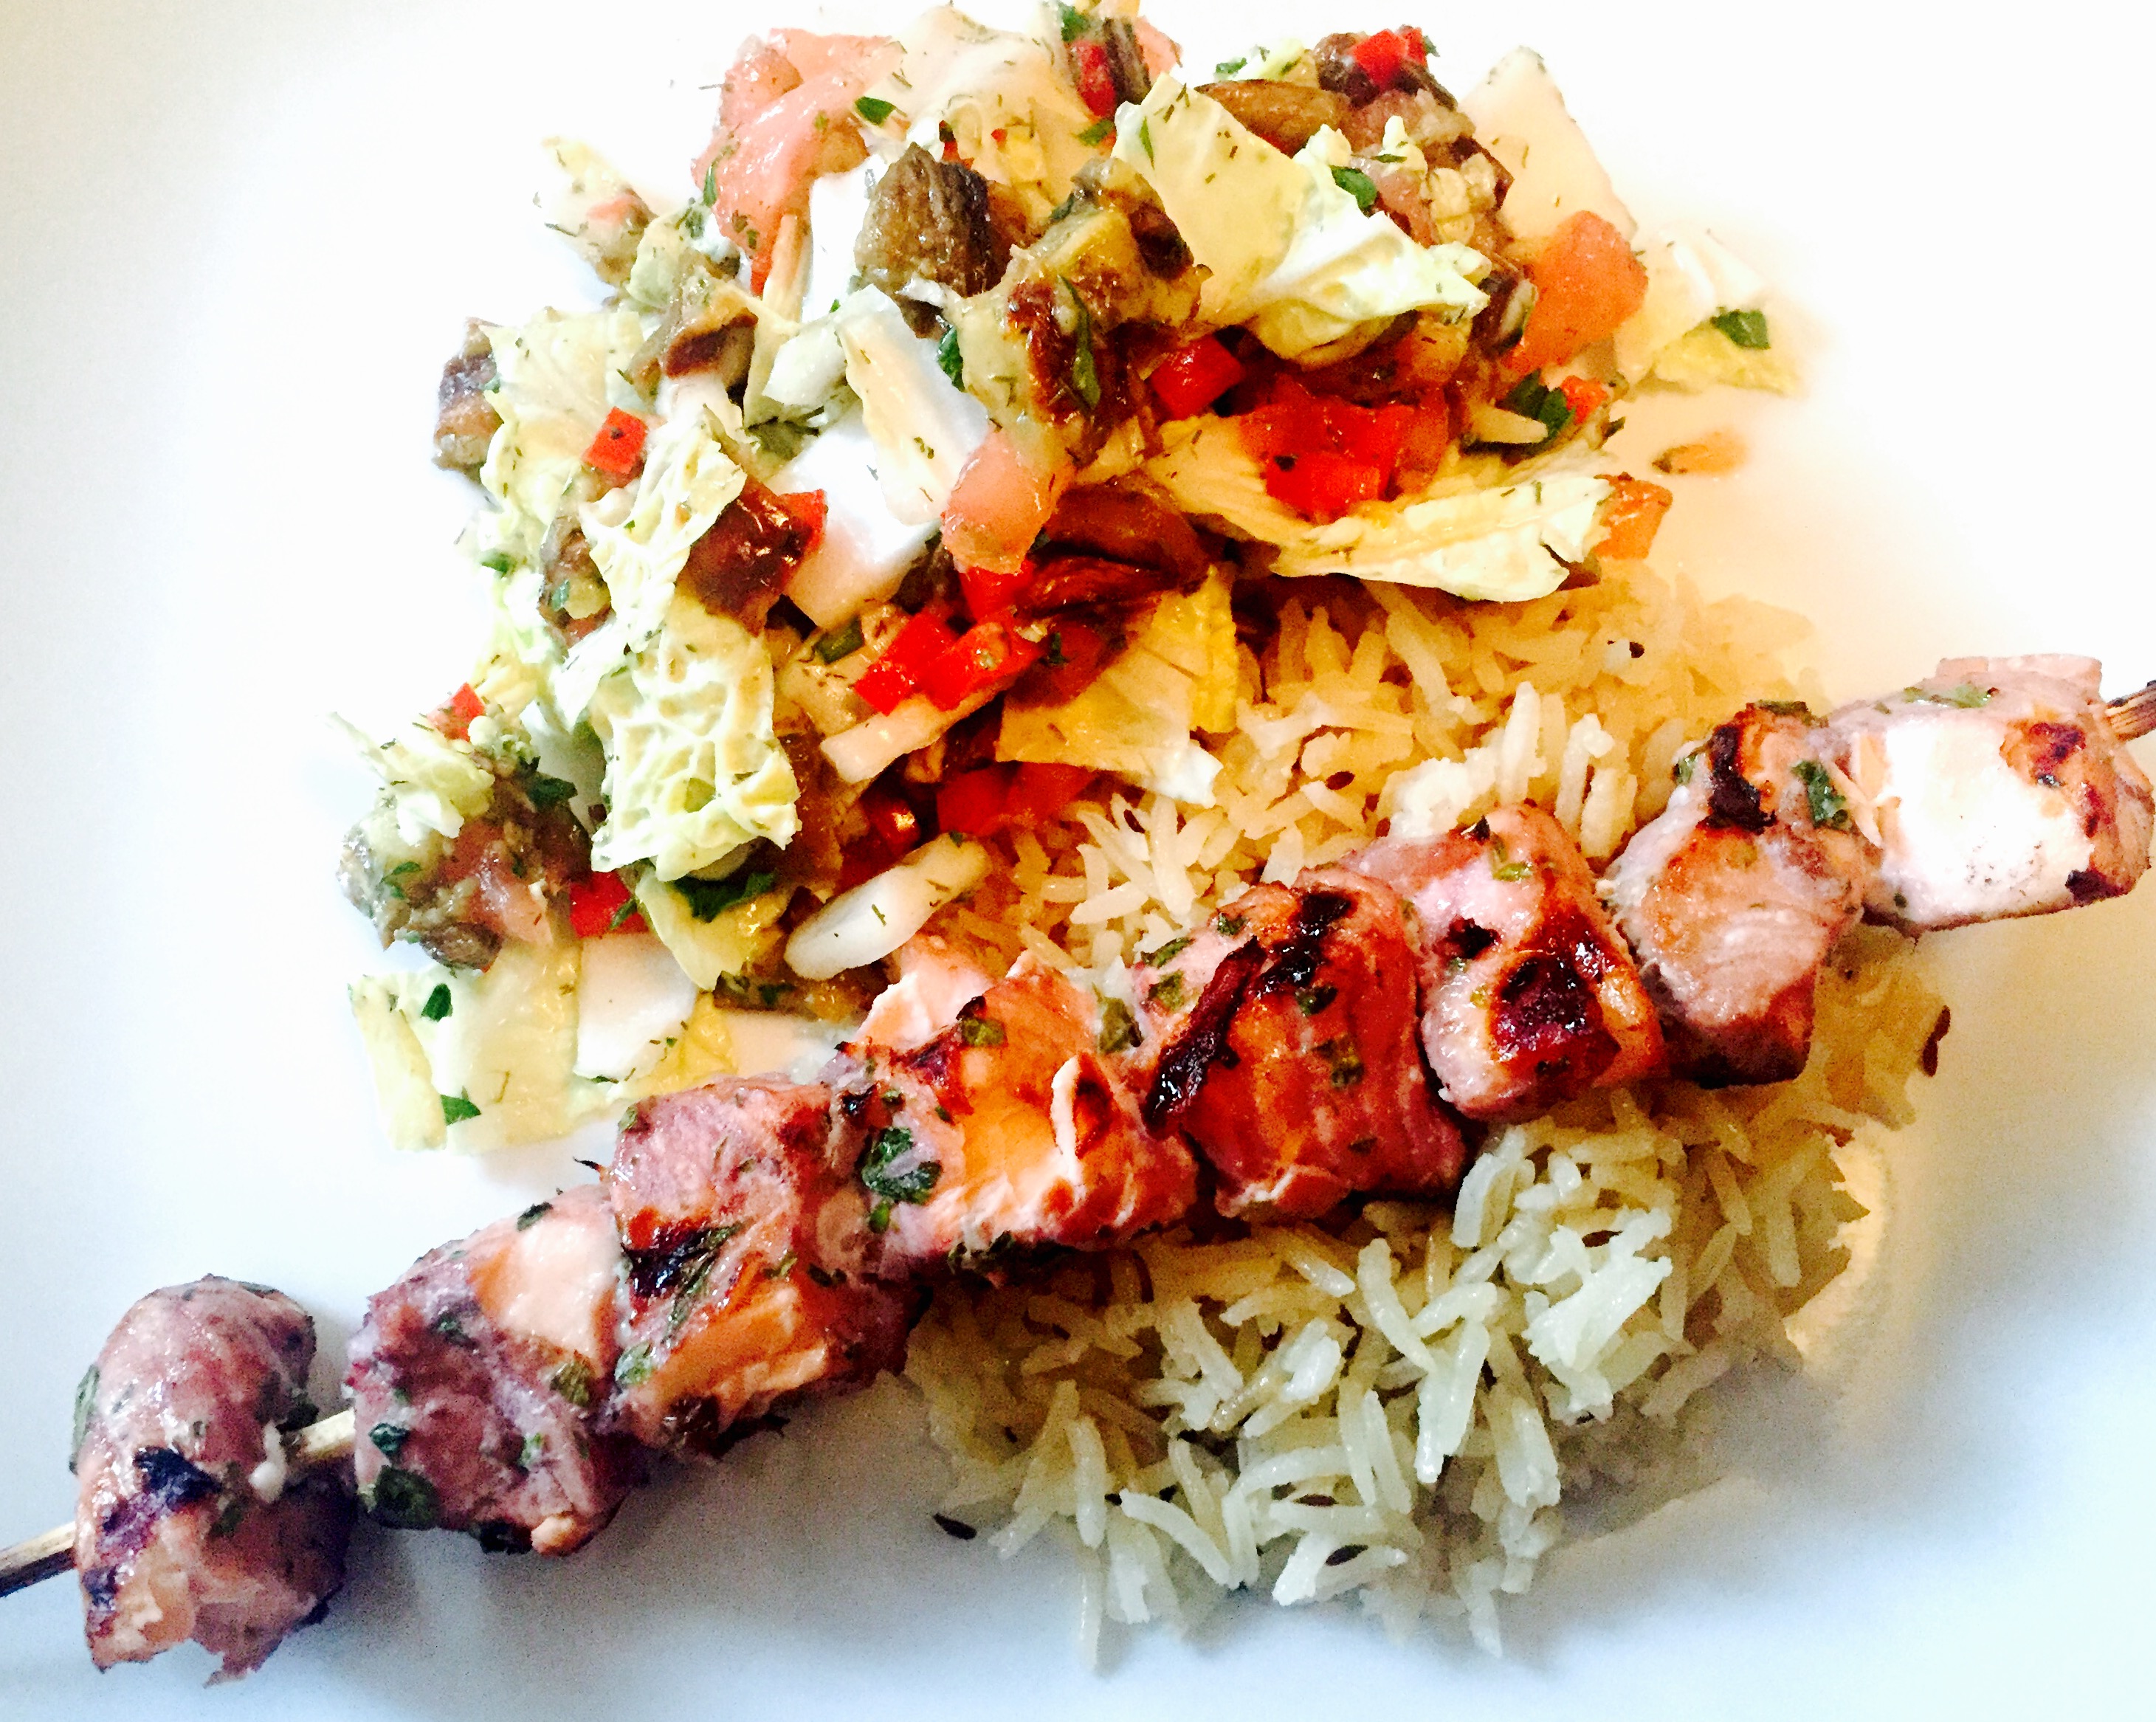 Turkmenistan salmon shashlik on rice with roasted eggplant salad